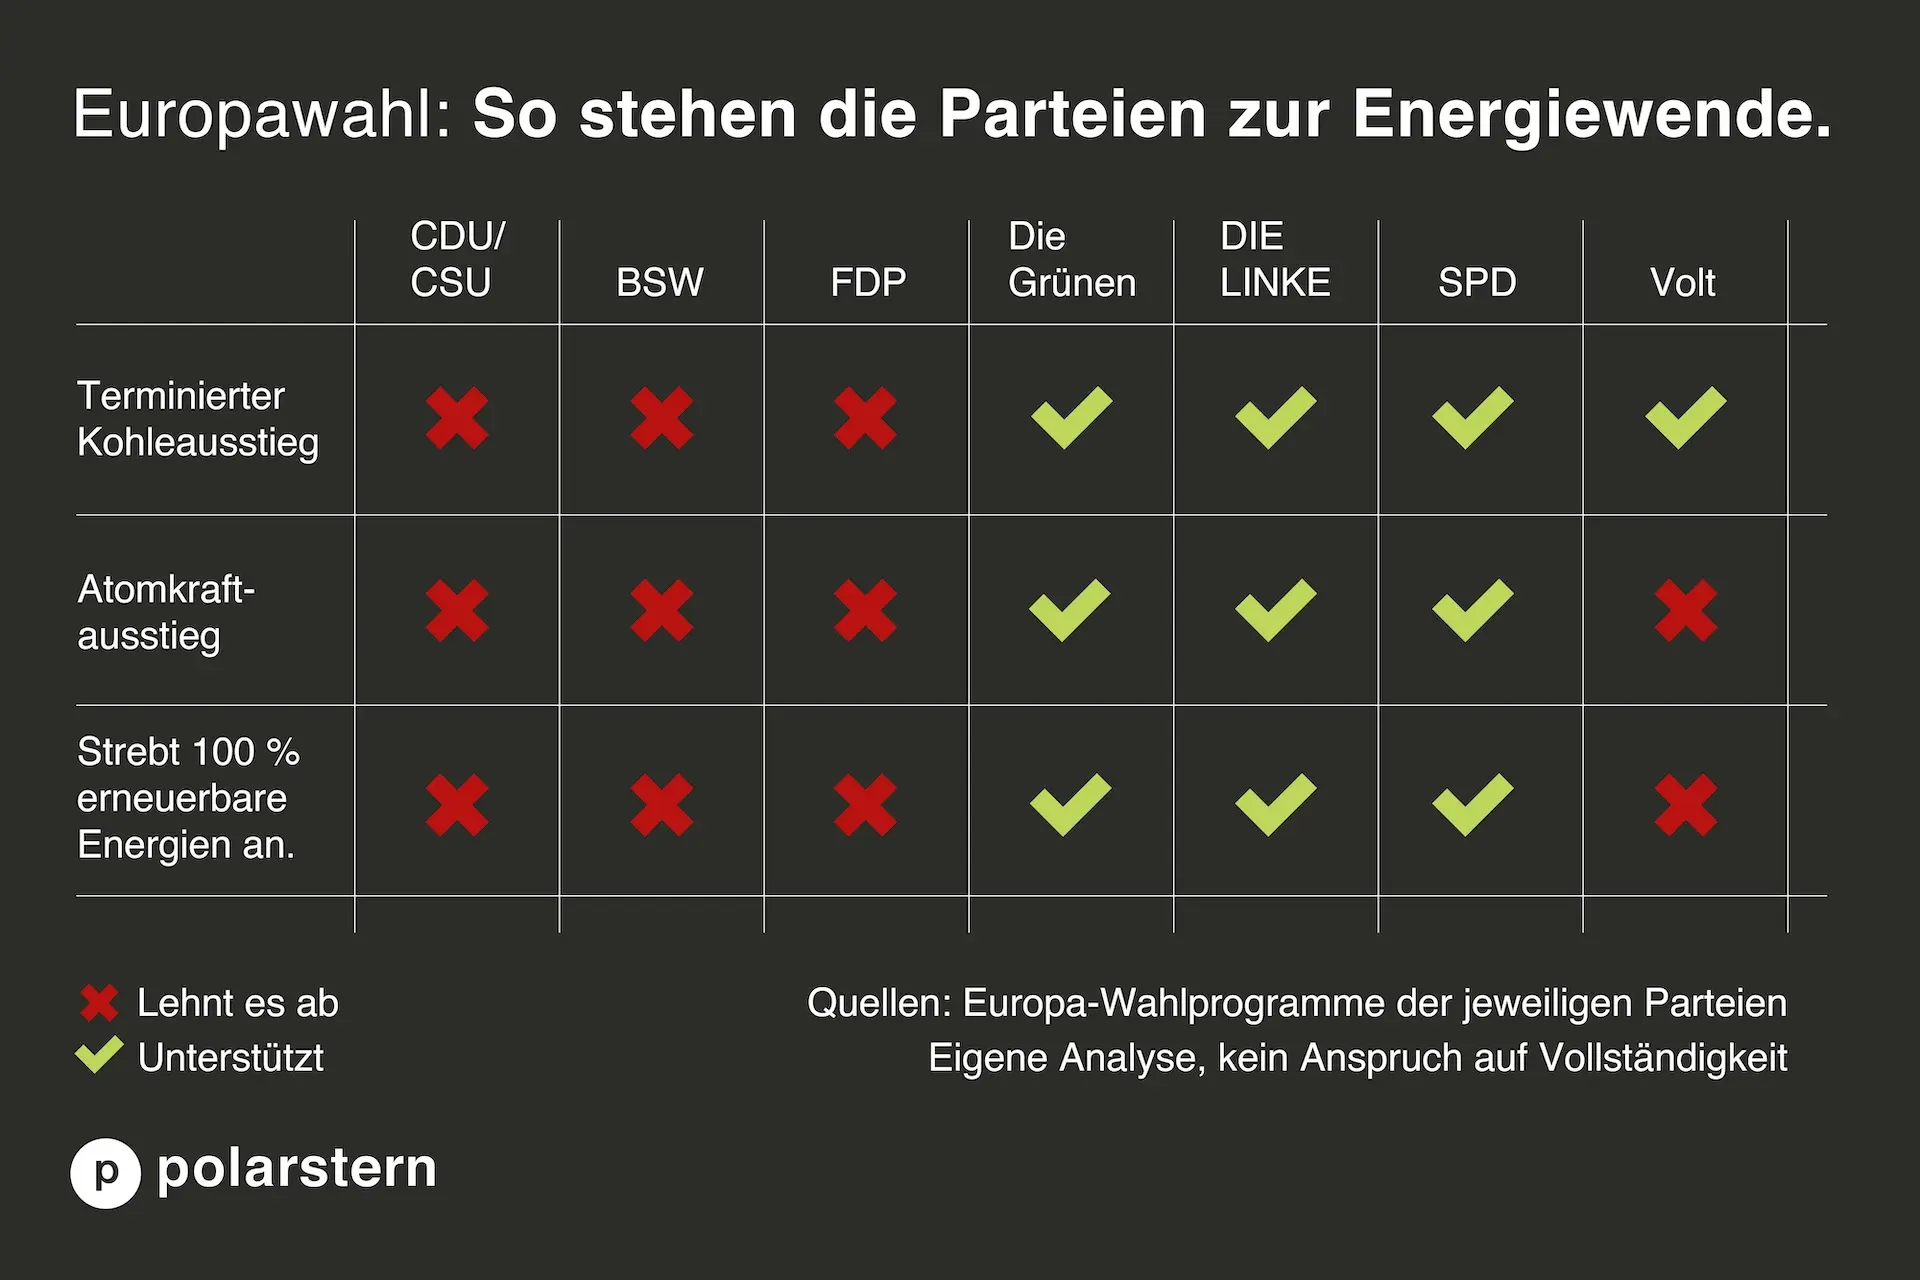 Europawahl: Parteien im Energiewende-Check.